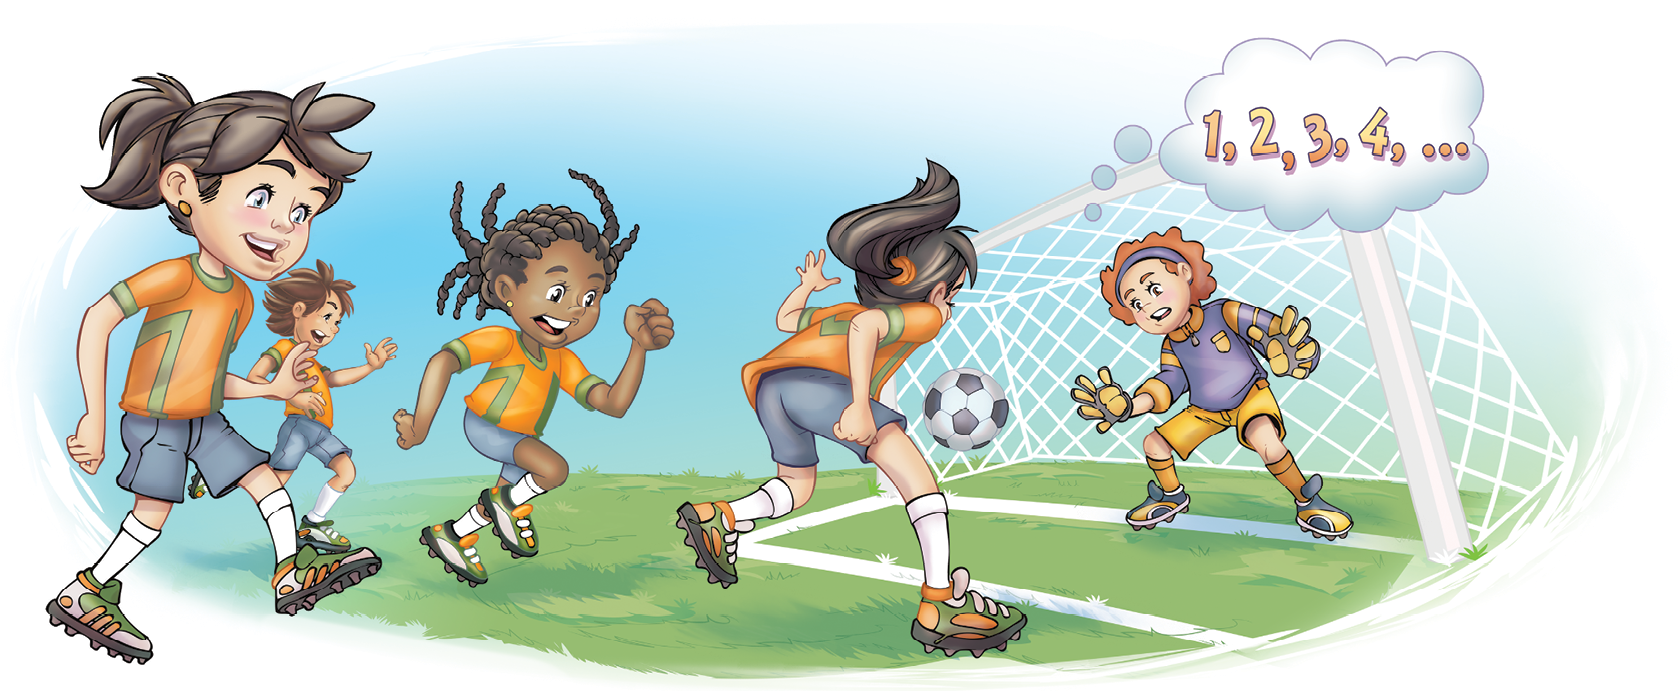 Ilustração. À esquerda, quatro meninas uniformizadas de camiseta laranja e bermuda azul estão em um campo de futebol, jogando bola em direção ao gol. À direita, na área do gol, está uma menina de camisa roxa, bermuda amarela e luvas. Acima dela, há um balão de pensamento escrito: 1, 2, 3, 4, reticências.